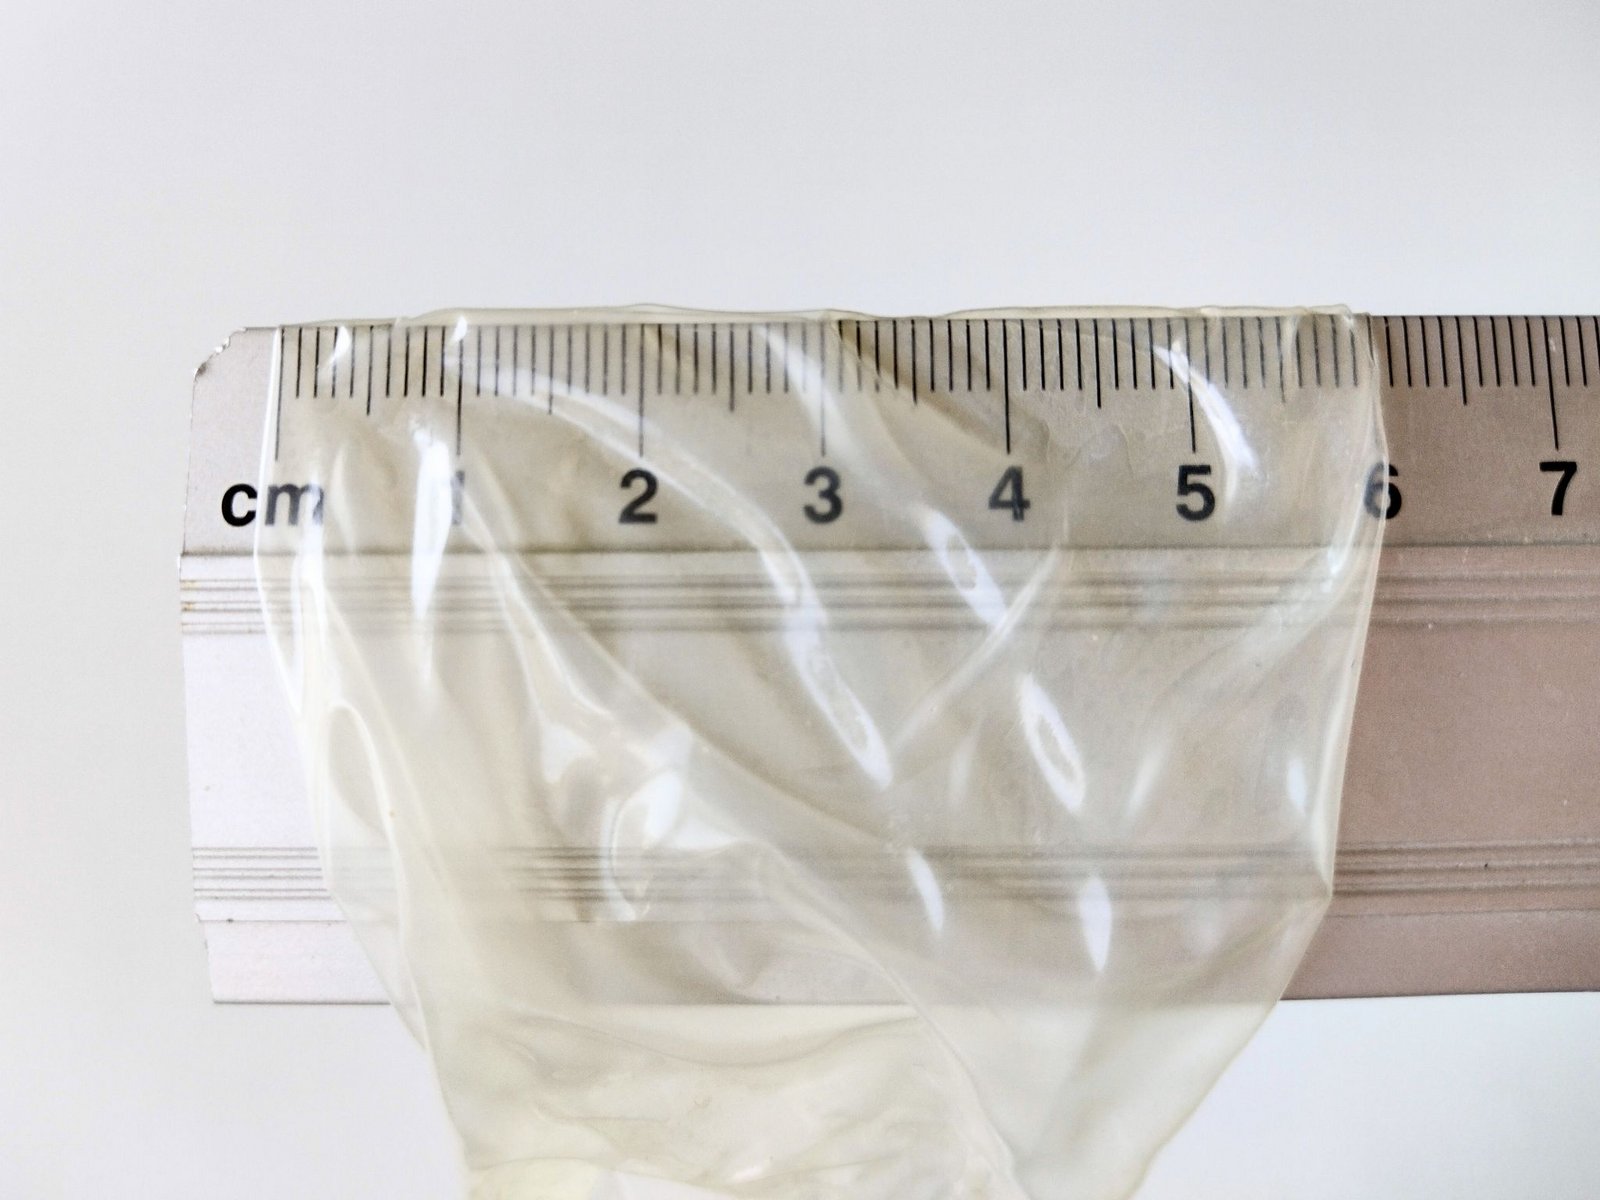 Kondomets nominelle bredde målt med en linjal